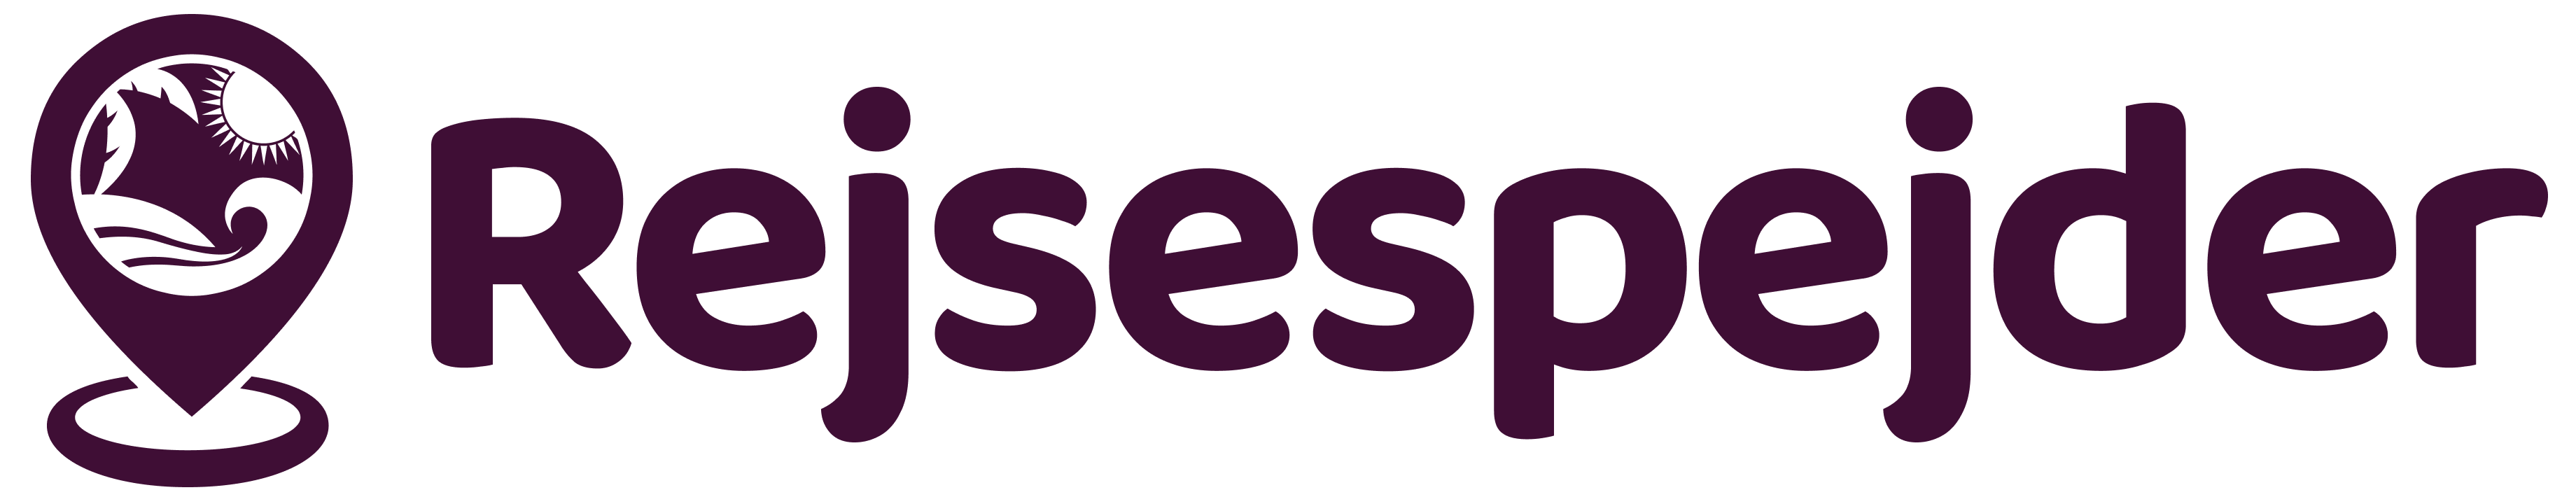 rejsespejder logo